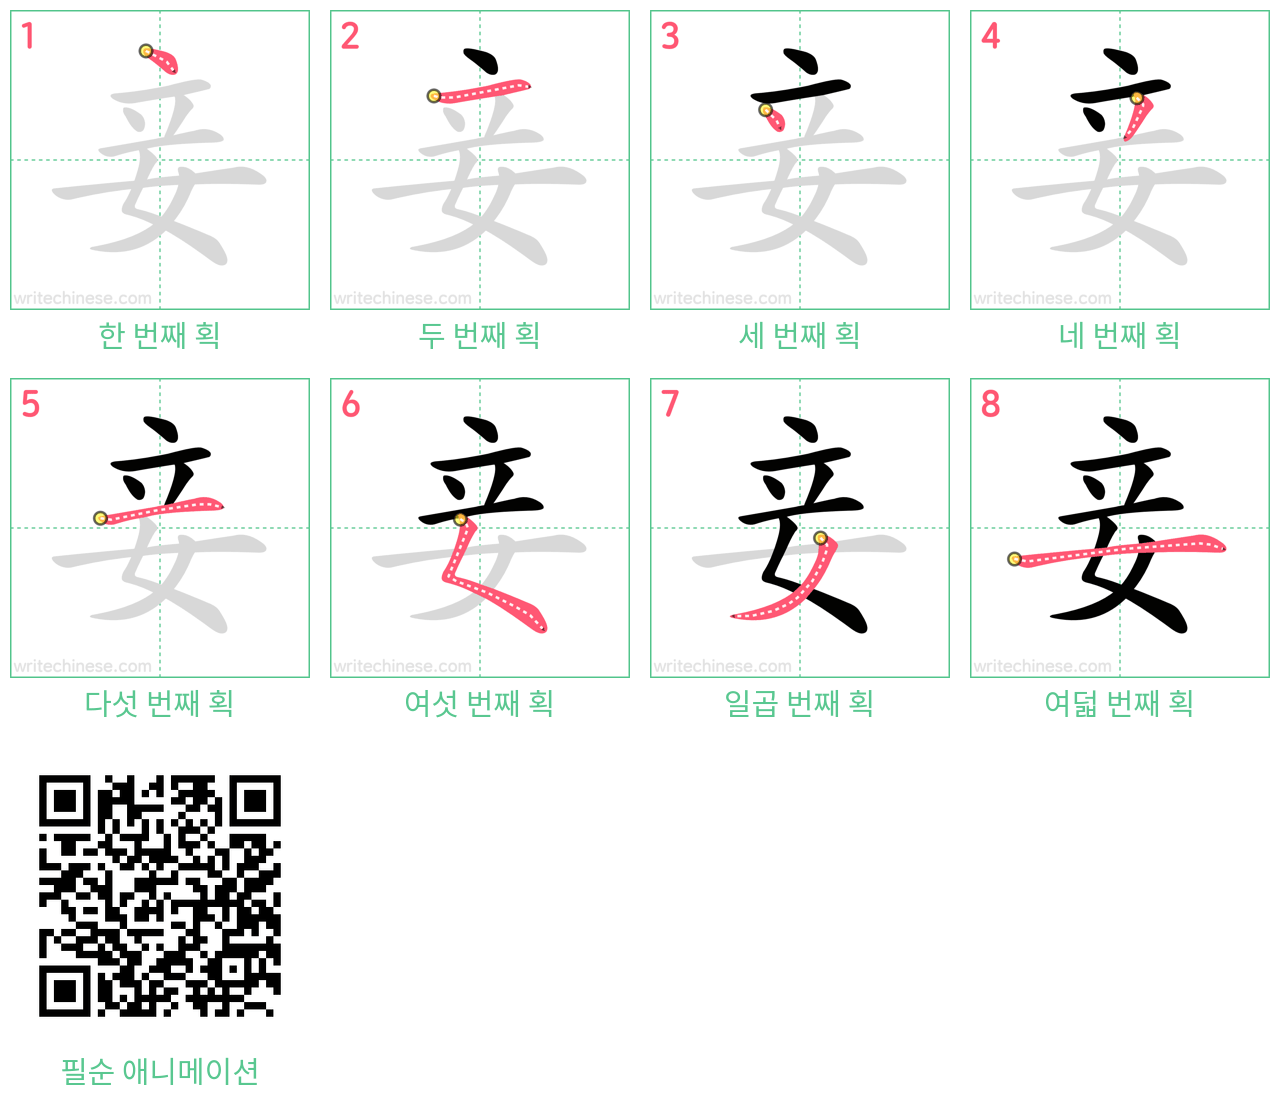 妾 step-by-step stroke order diagrams